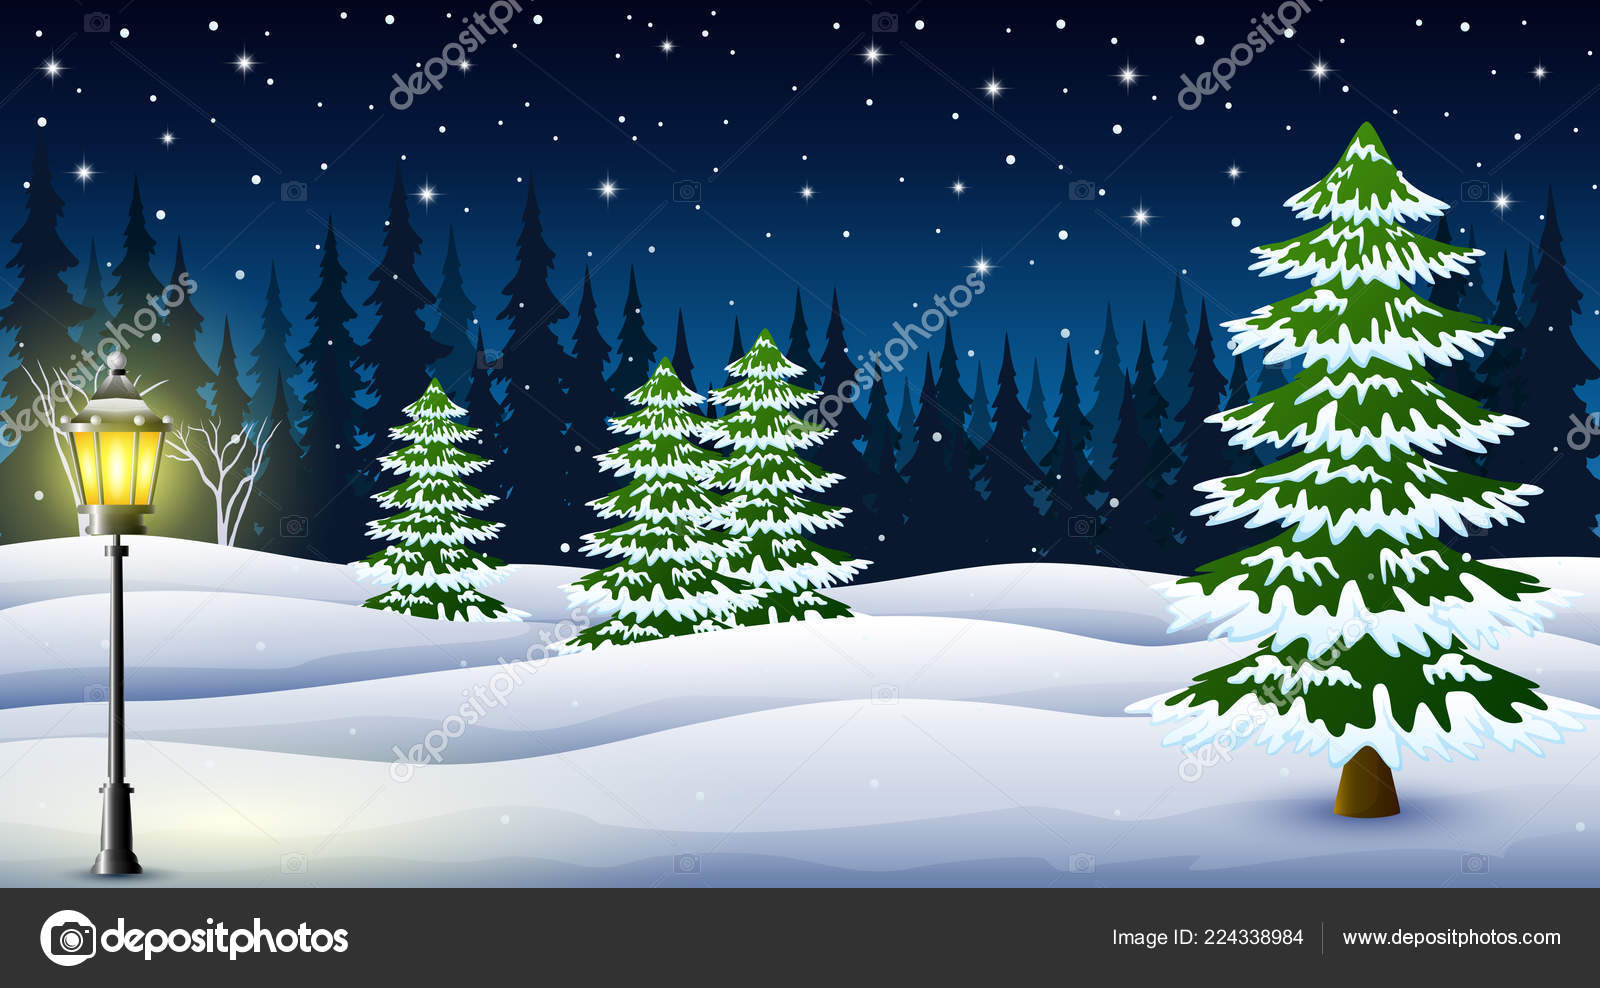 冬天夜背景的动画片与松树和路灯在晚上 图库矢量图像 C Dualoro